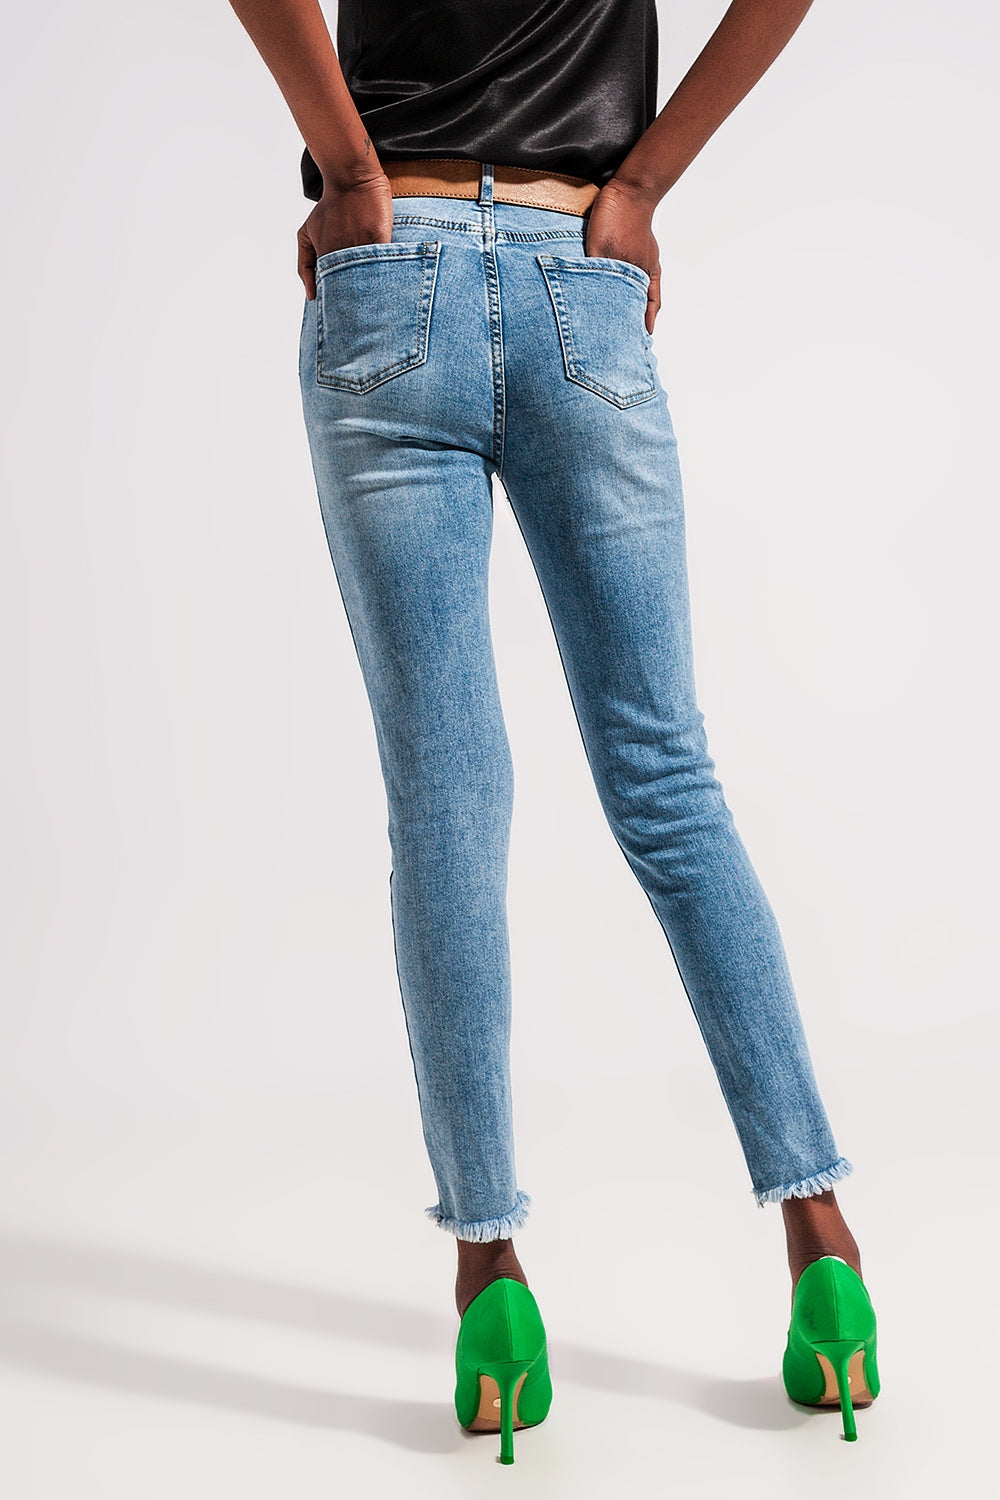 Jeans denim blu chiaro con fondo grezzo